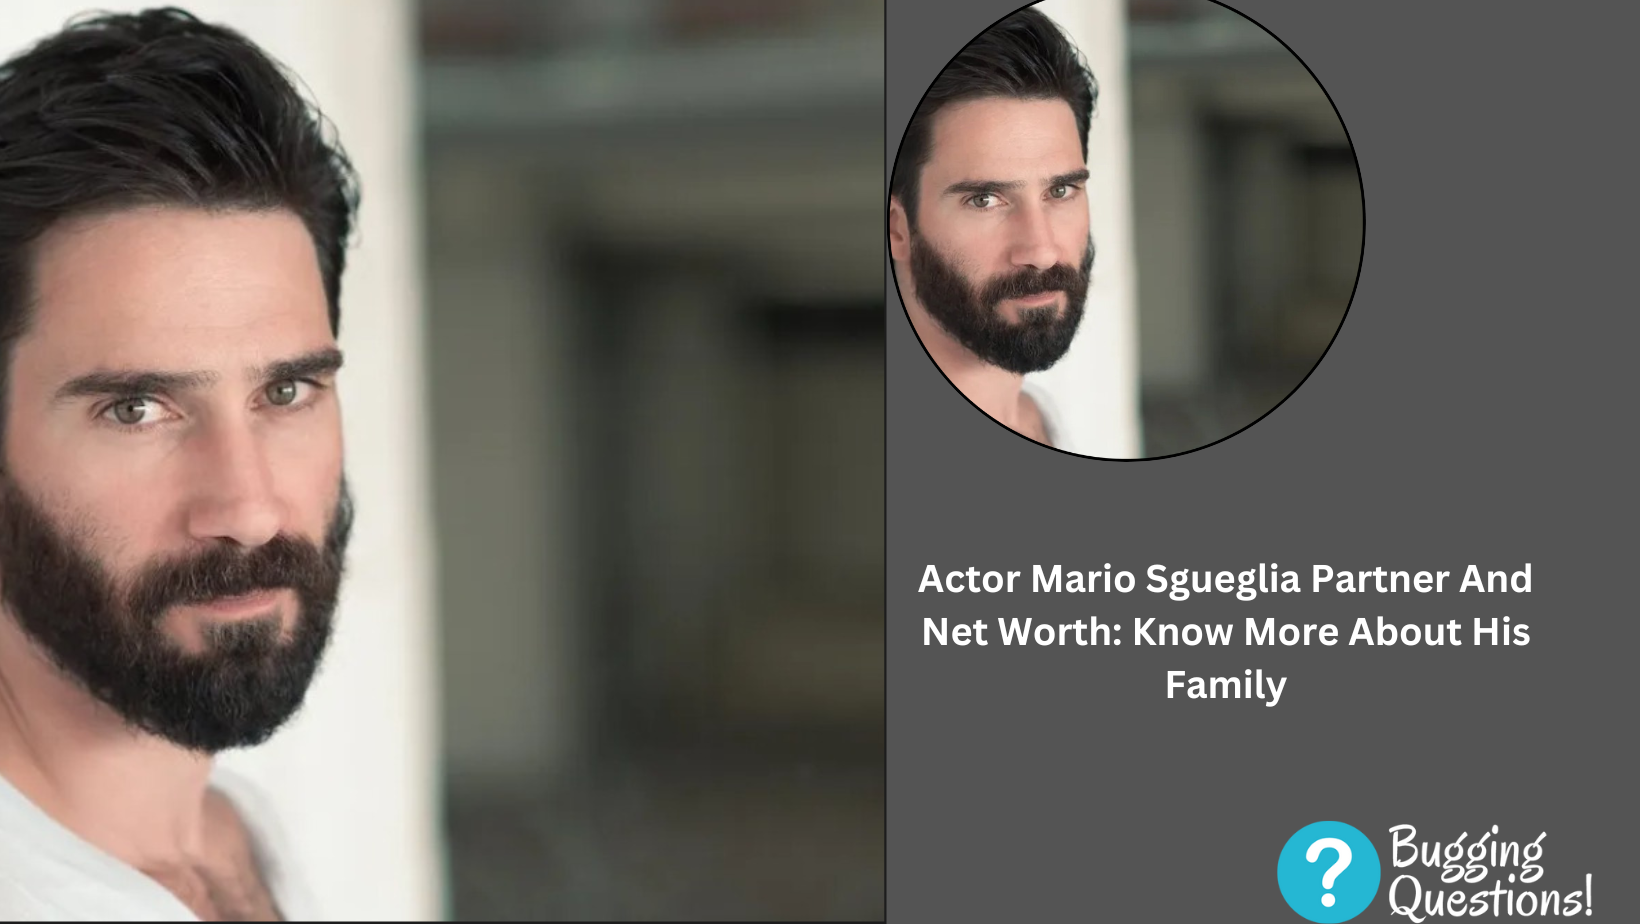 Actor Mario Sgueglia Partner And Net Worth